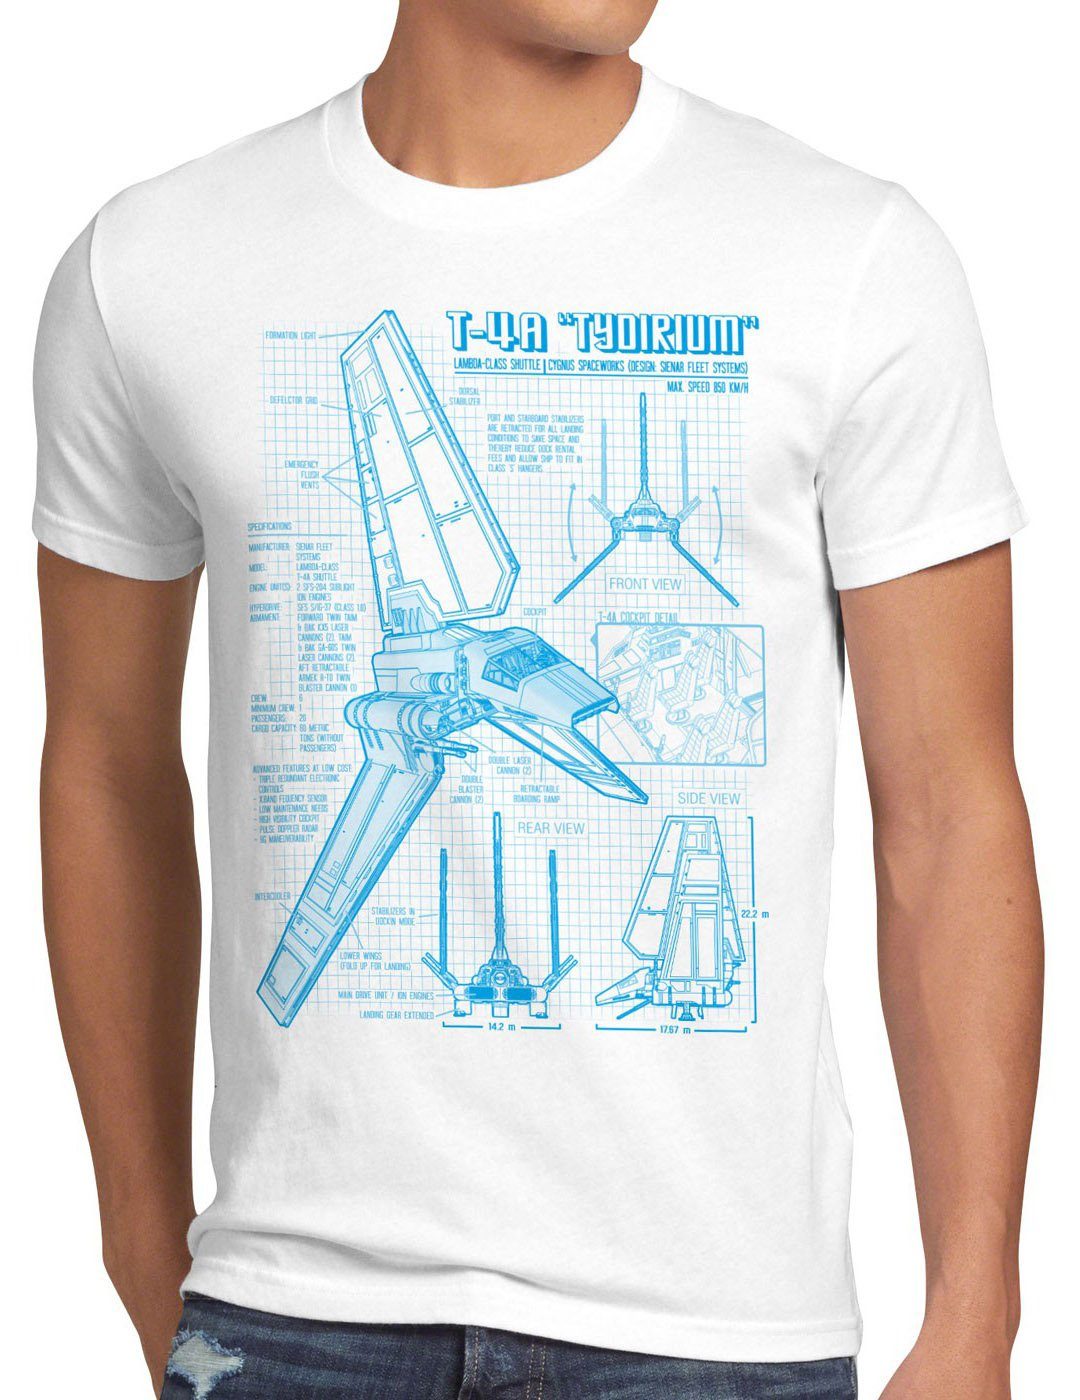 style3 Print-Shirt Herren T-Shirt Tydirium Lambda T-4A Shuttle blaupause raumfähre weiß